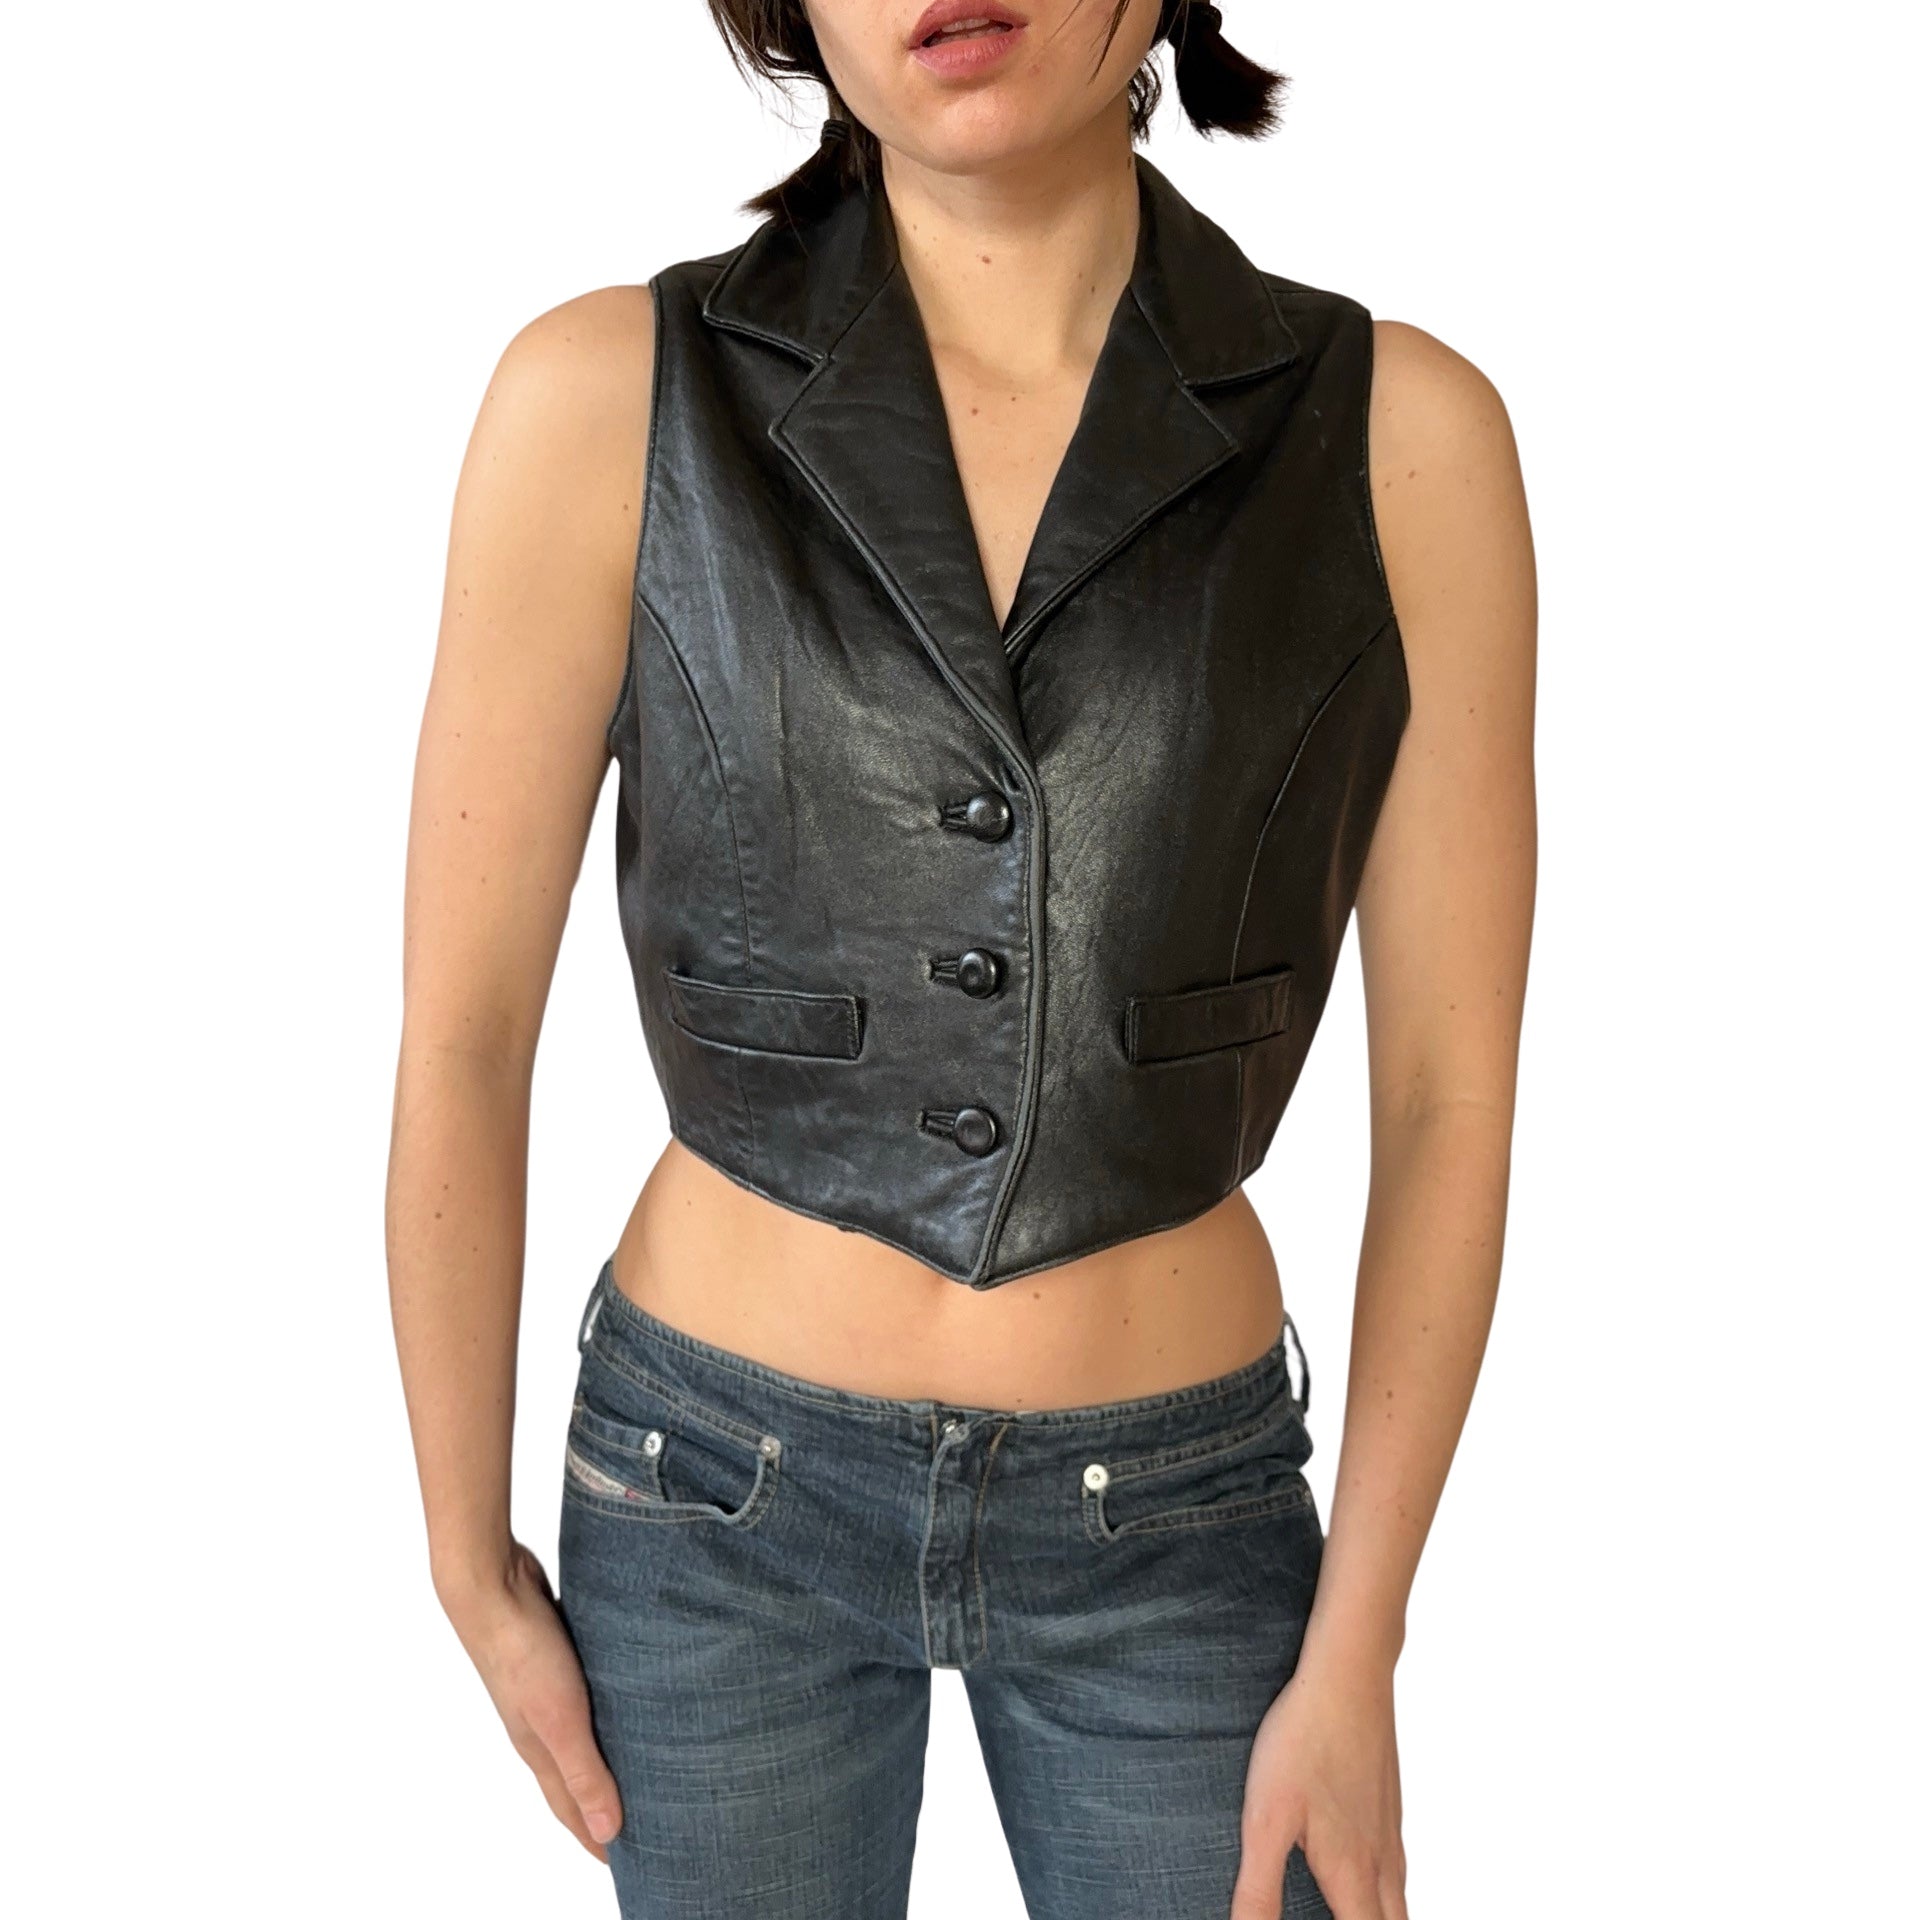 90s Noir Leather Vest (S)